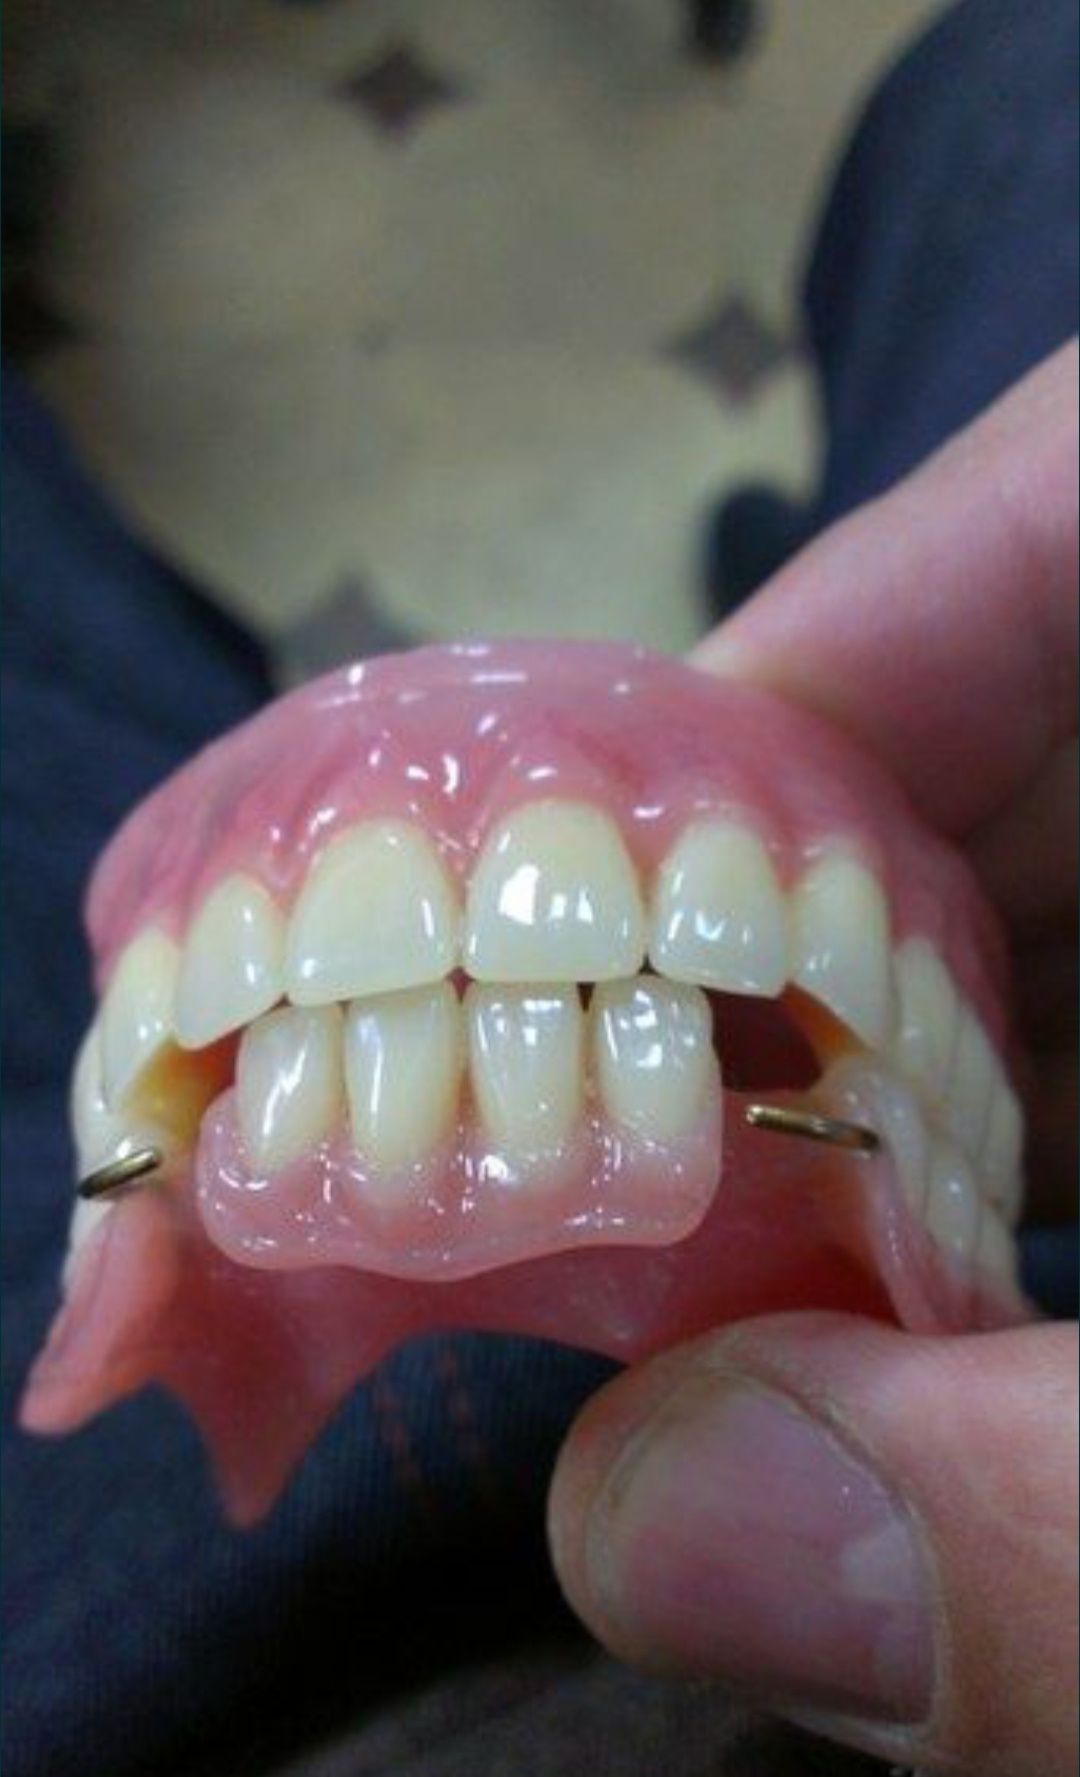 Съёмные зубные протезы